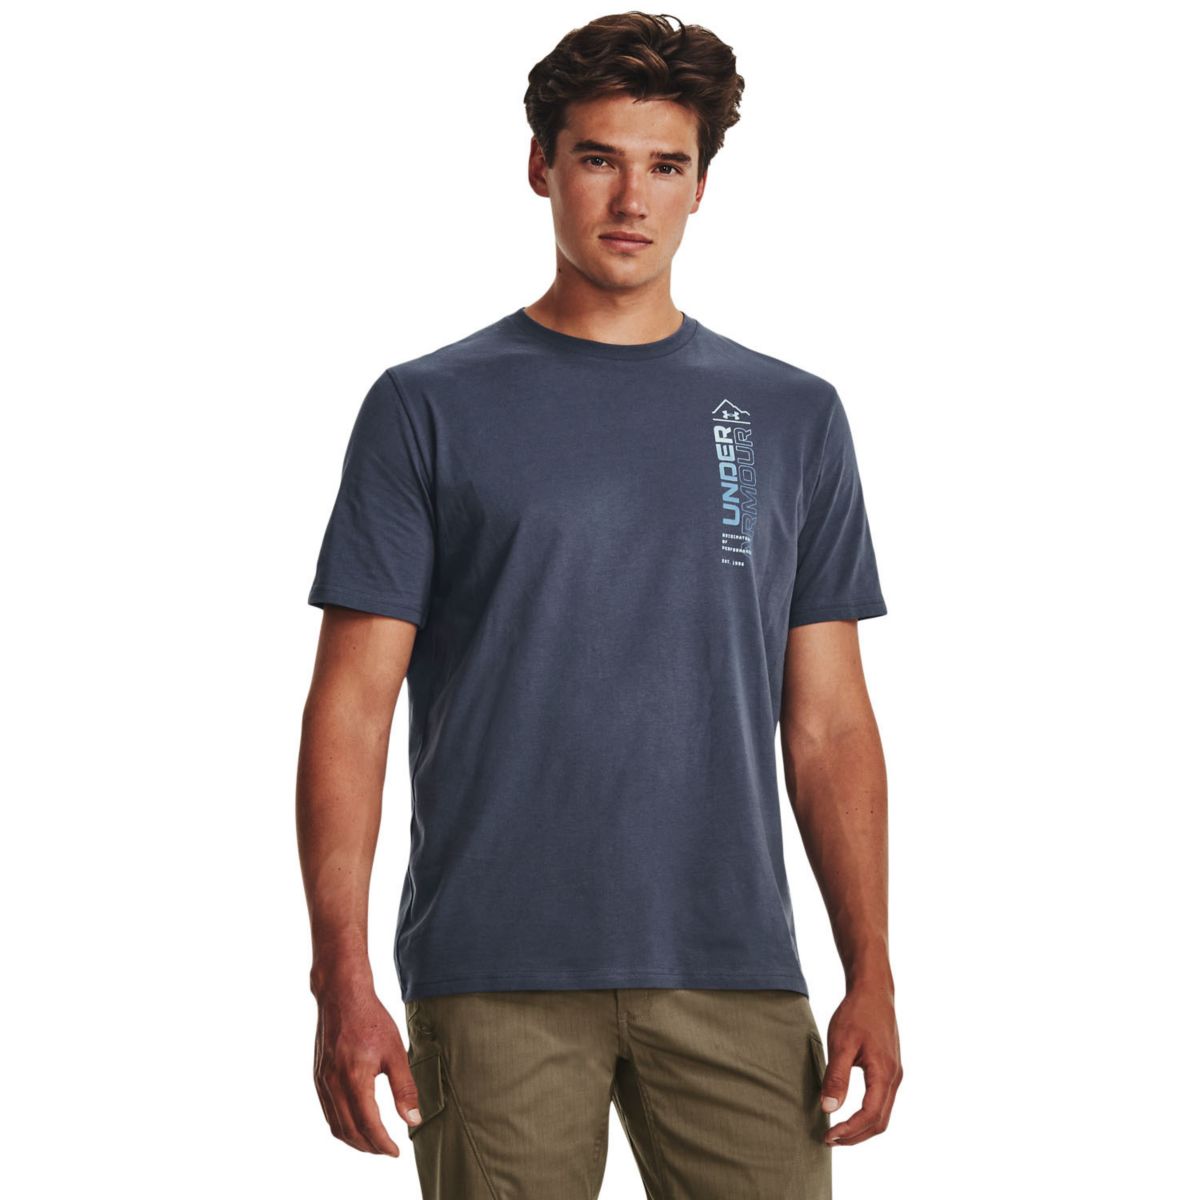 Мужская футболка Under Armour для скалолазания на открытом воздухе с короткими рукавами Under Armour